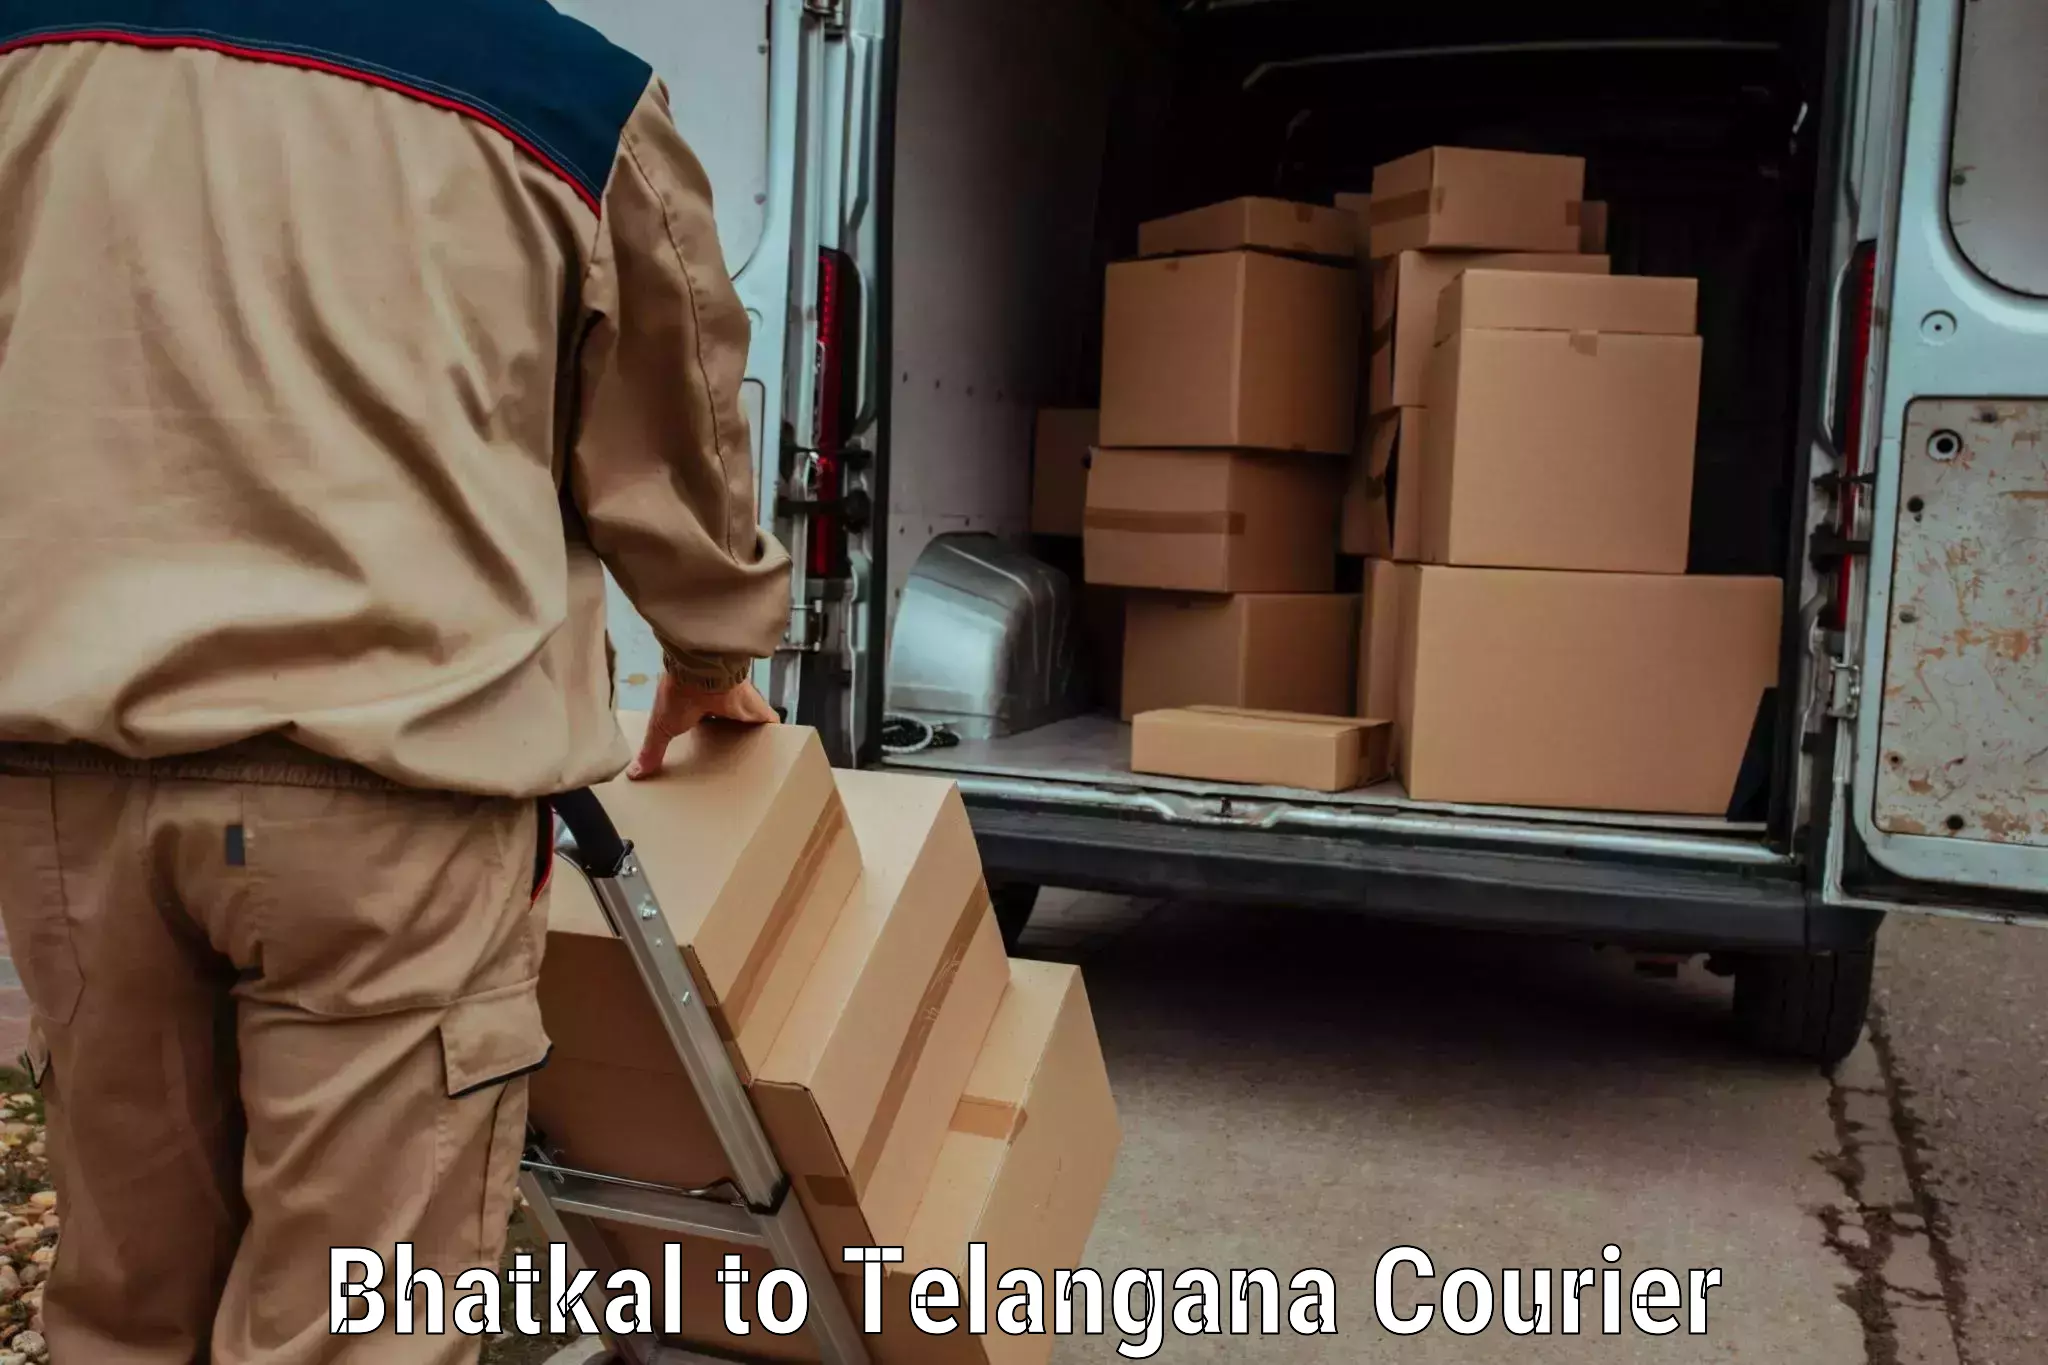 Next-day freight services Bhatkal to Koratla